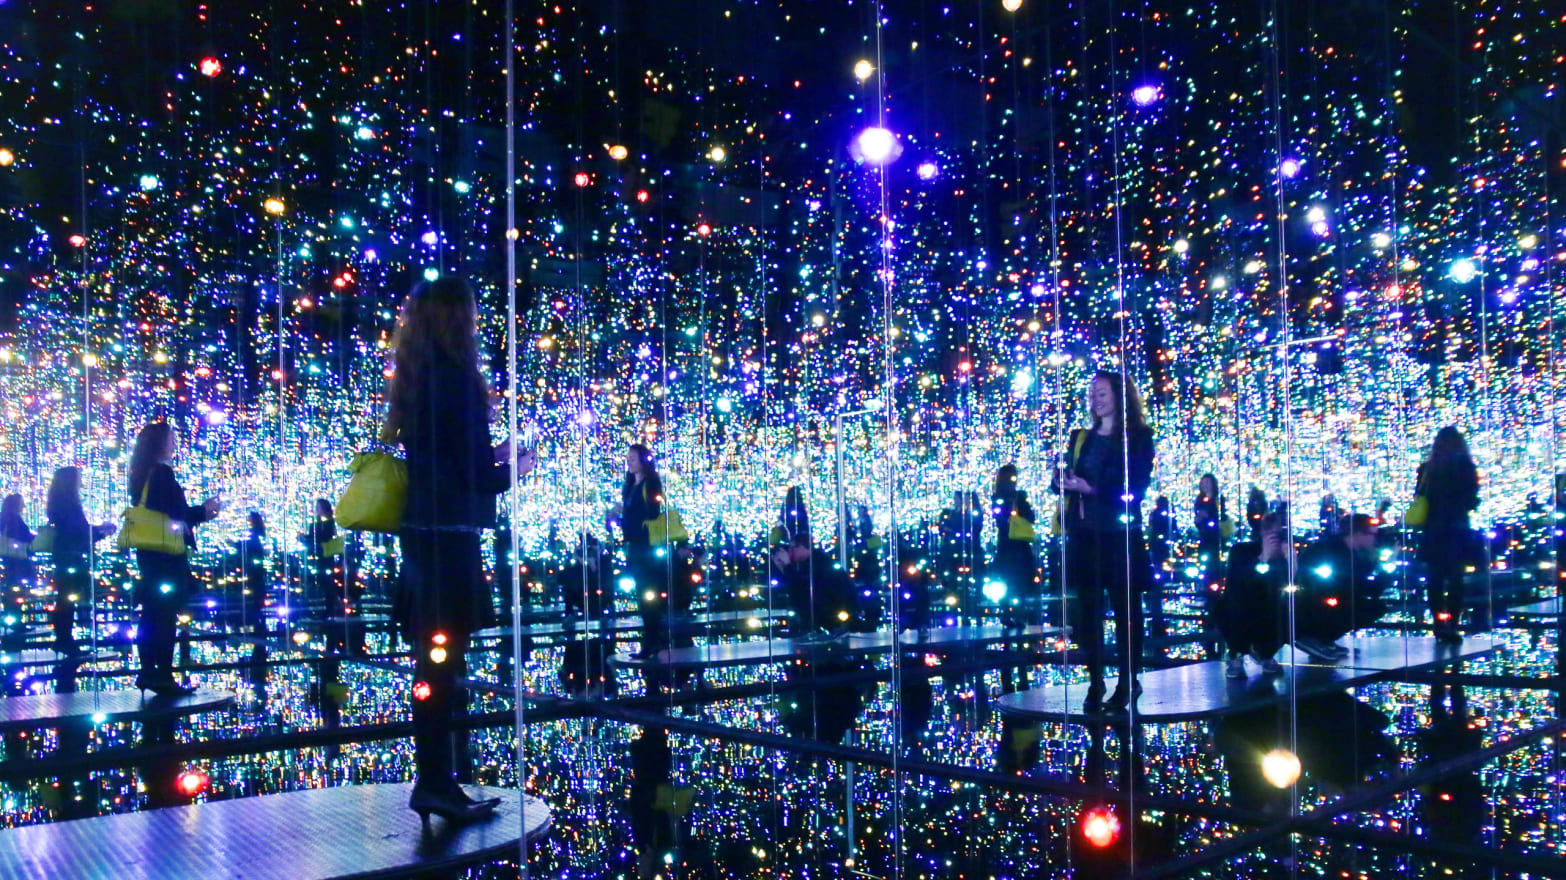 Yayoi Kusama's “Infinity Mirrored Room” Madness Takes Manhattan